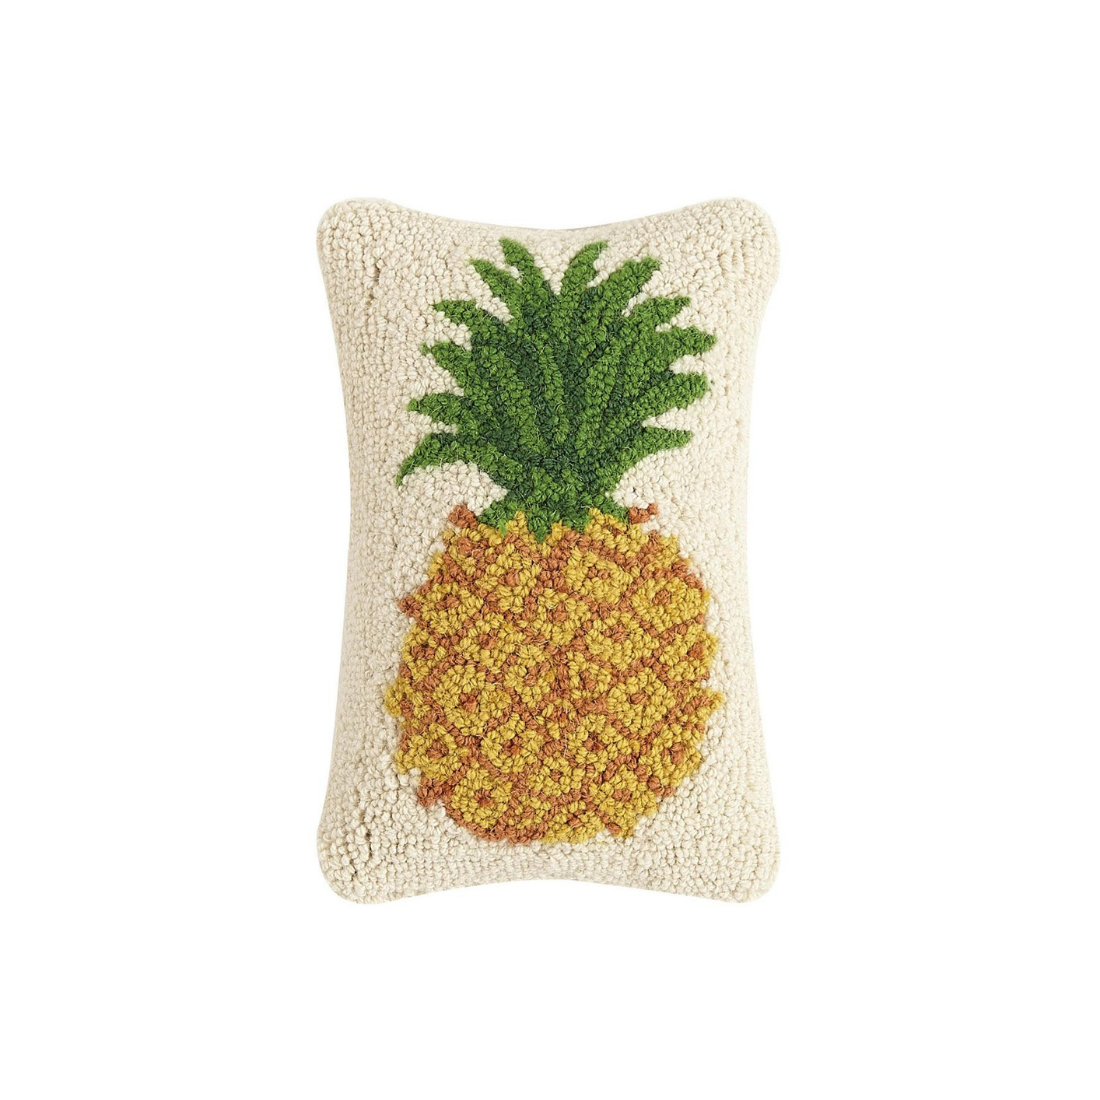 Billede af Tufted pude Pineapple 20 x 30 cm.